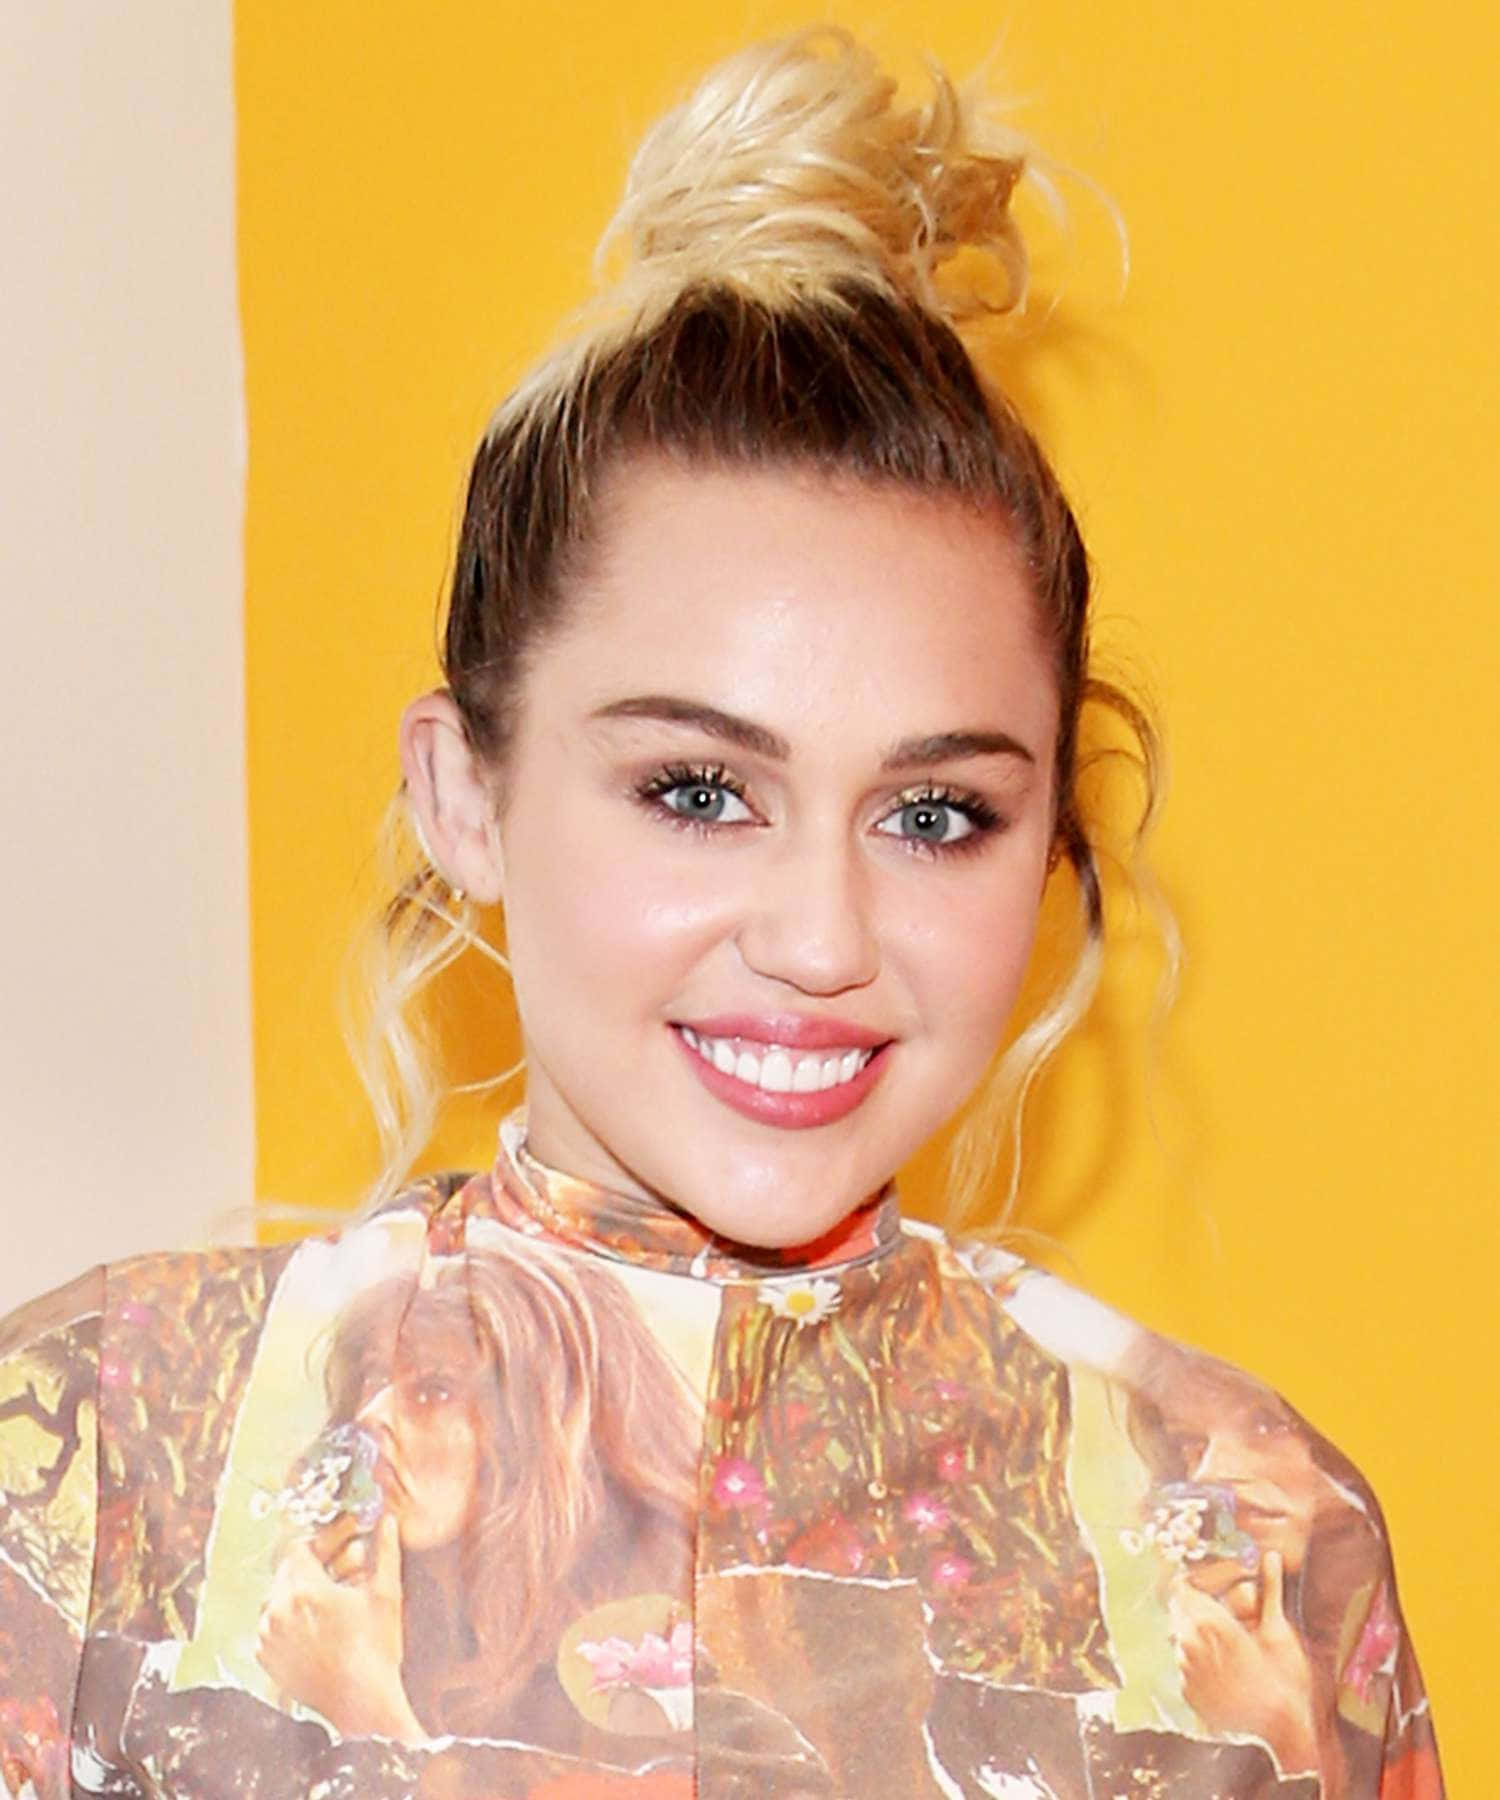 O Papel De Parede Da Miley Cyrus É Muito Popular Entre Os Adolescentes.